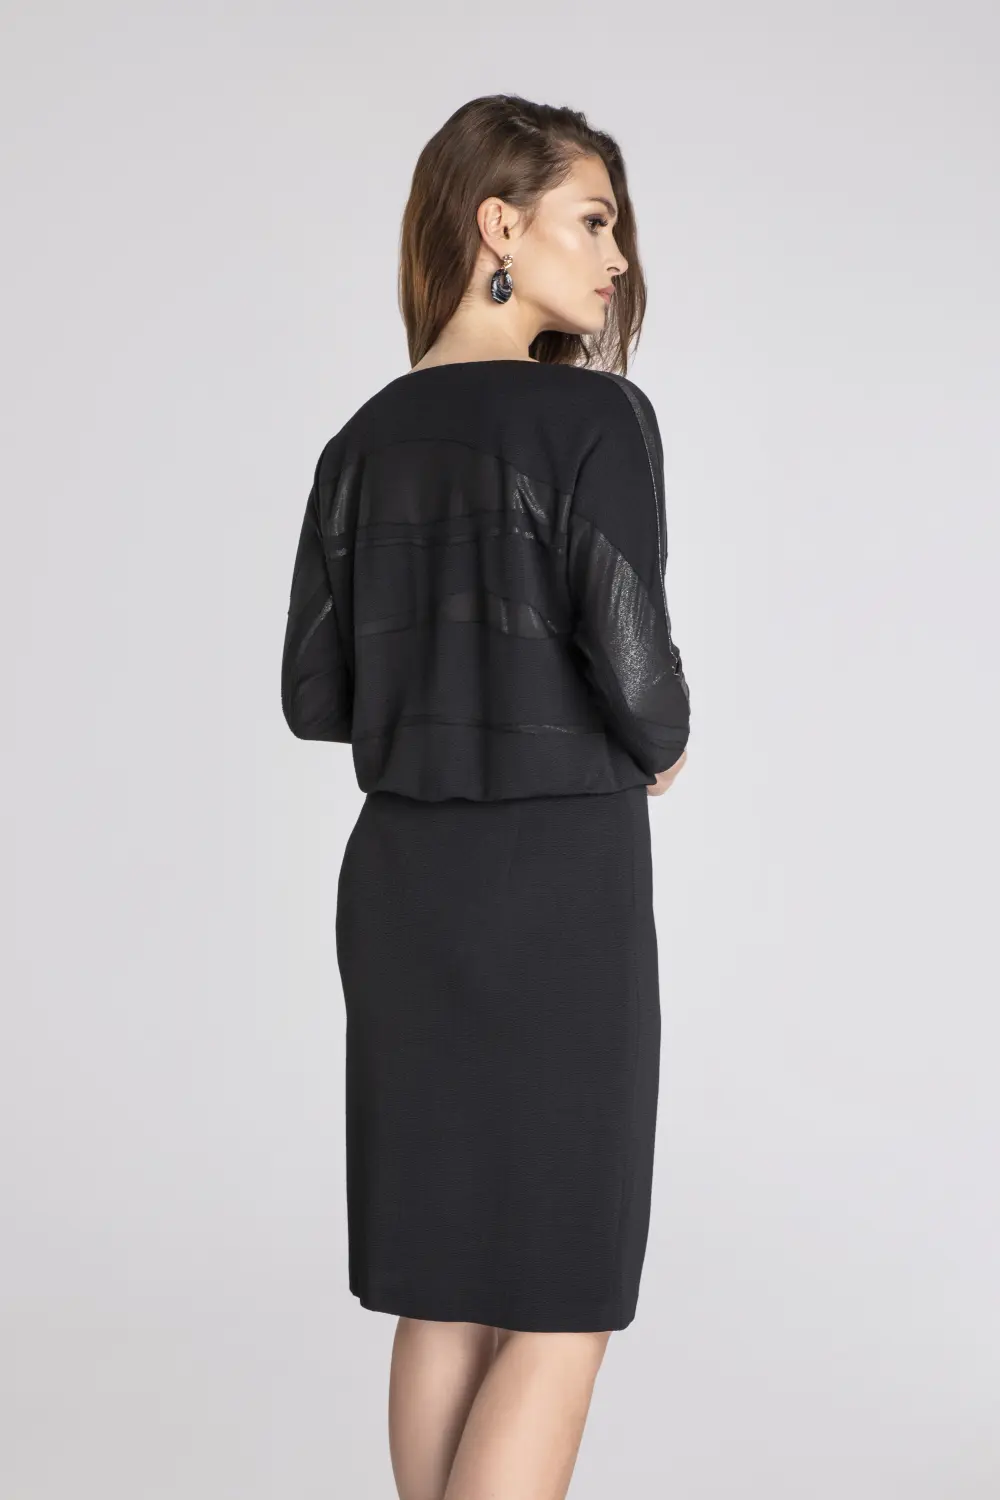 czarna sukienka wizytowa z błyszczącymi wstawkami i lampasem polskiej marki Vito Vergelis